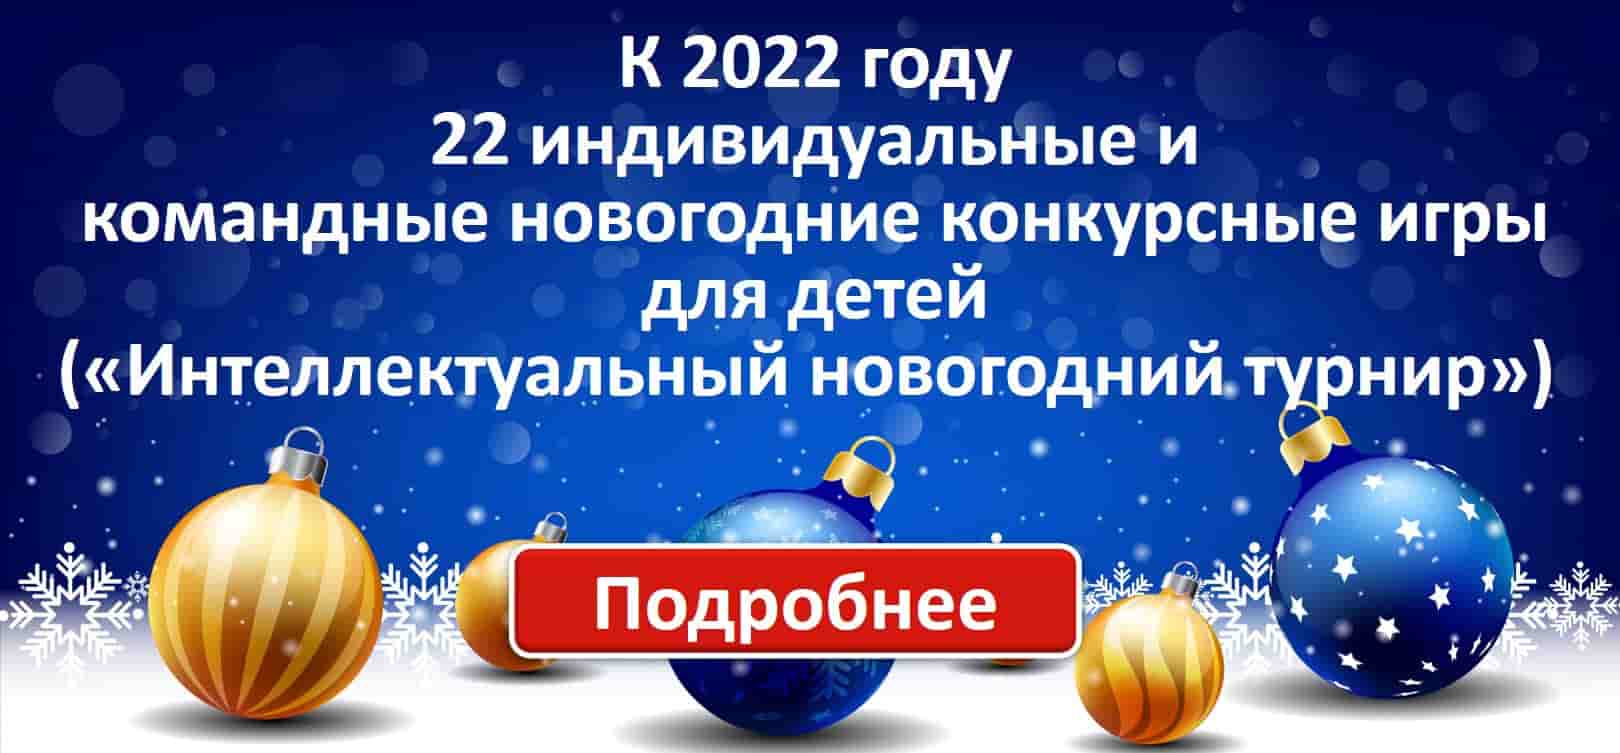 Игры для детей на Новый год 2022